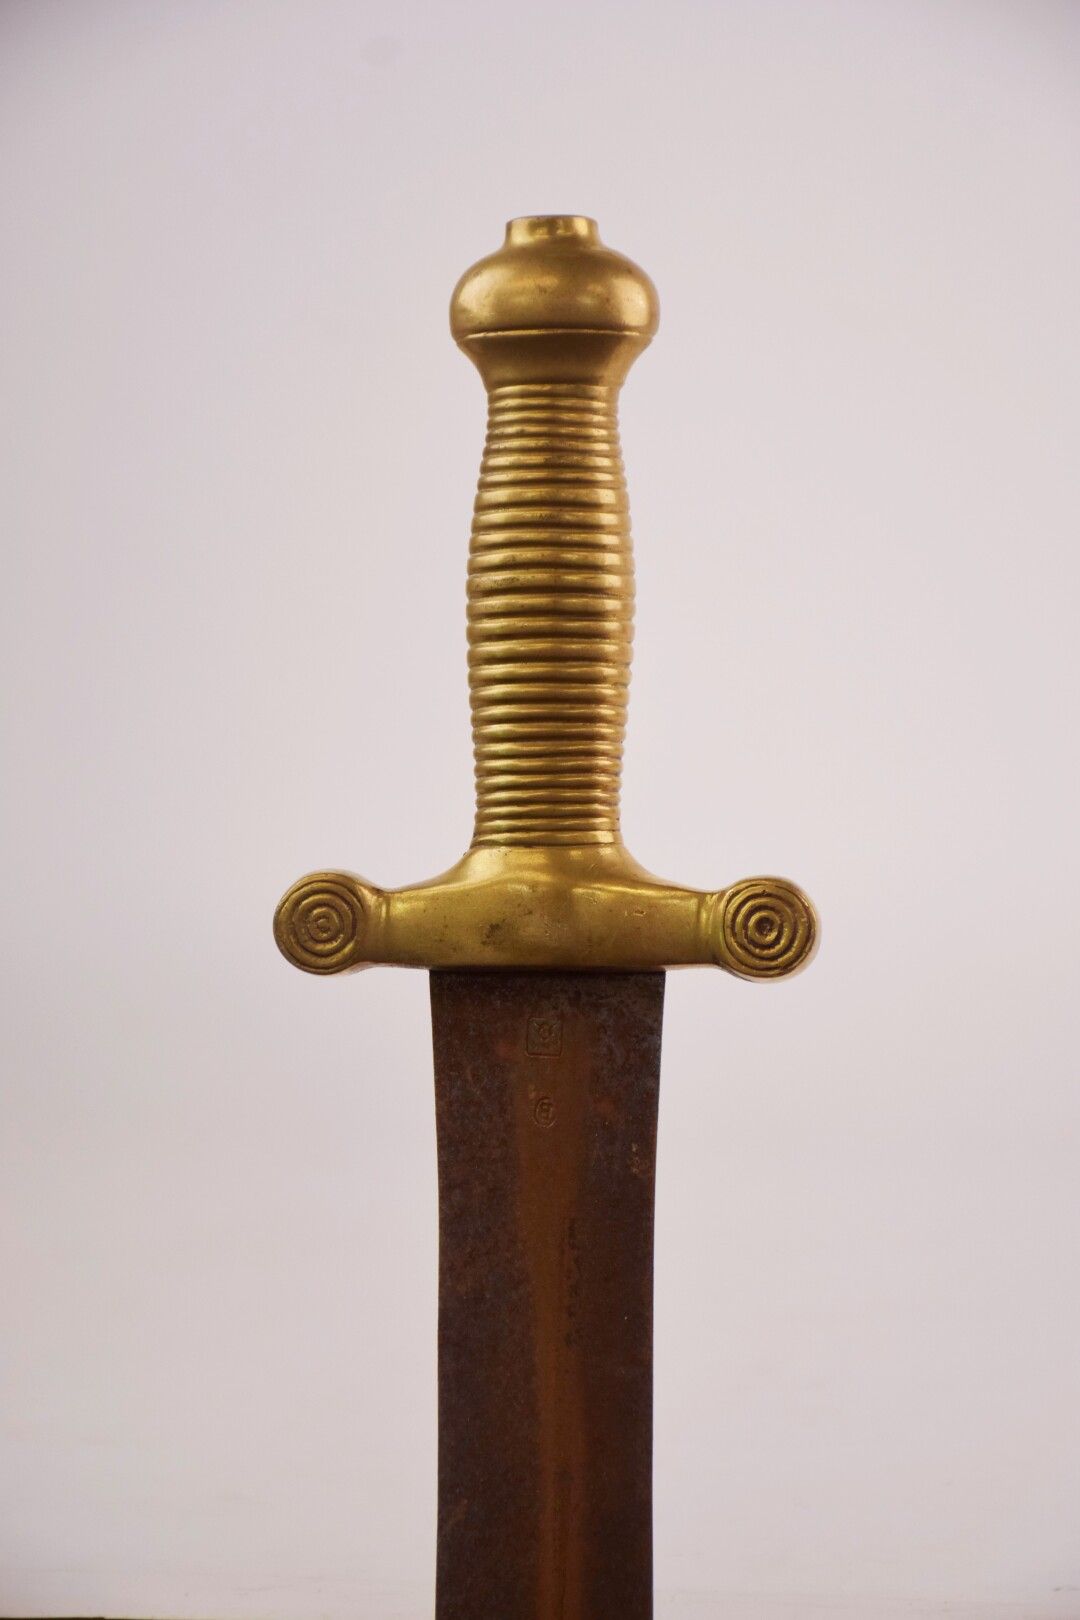 Null 国民警卫队或消防员的剑，以1831年的步兵剑为模型，青铜手柄，双刃直刀（氧化，磨损），带刀鞘

19世纪时期

总长度：62.5厘米